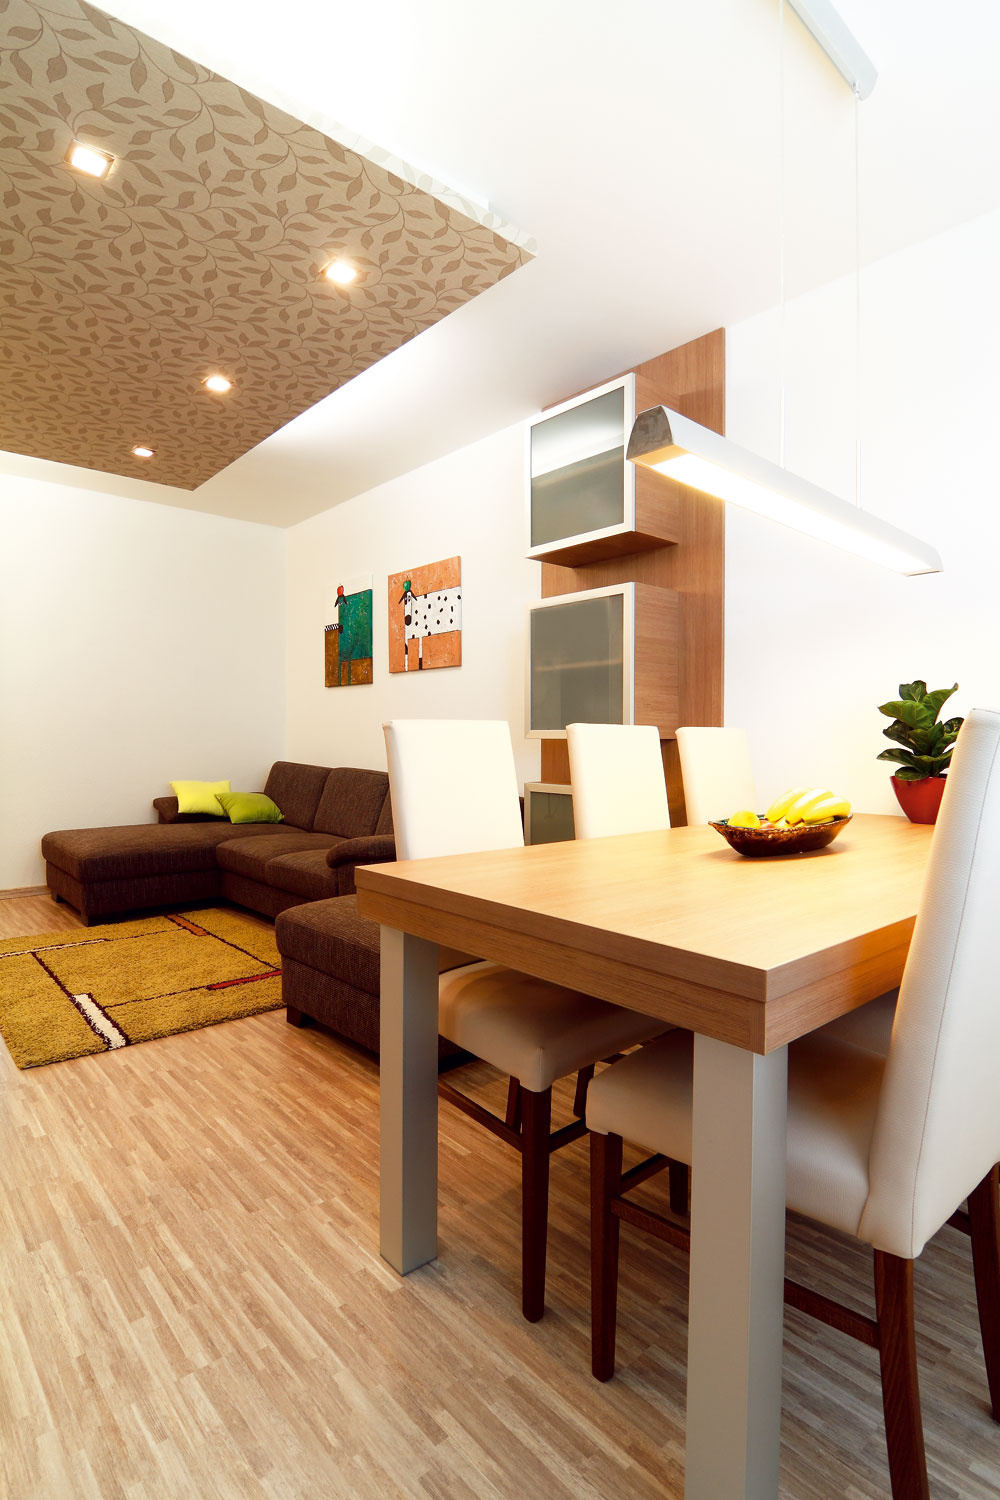  Nábytok v obývačke a jedálni poňal architekt minimalisticky a skôr kompozične. Vytiahnuť otapetovanú stenu až na strop sa nakoniec ukázalo ako dobrý ťah.